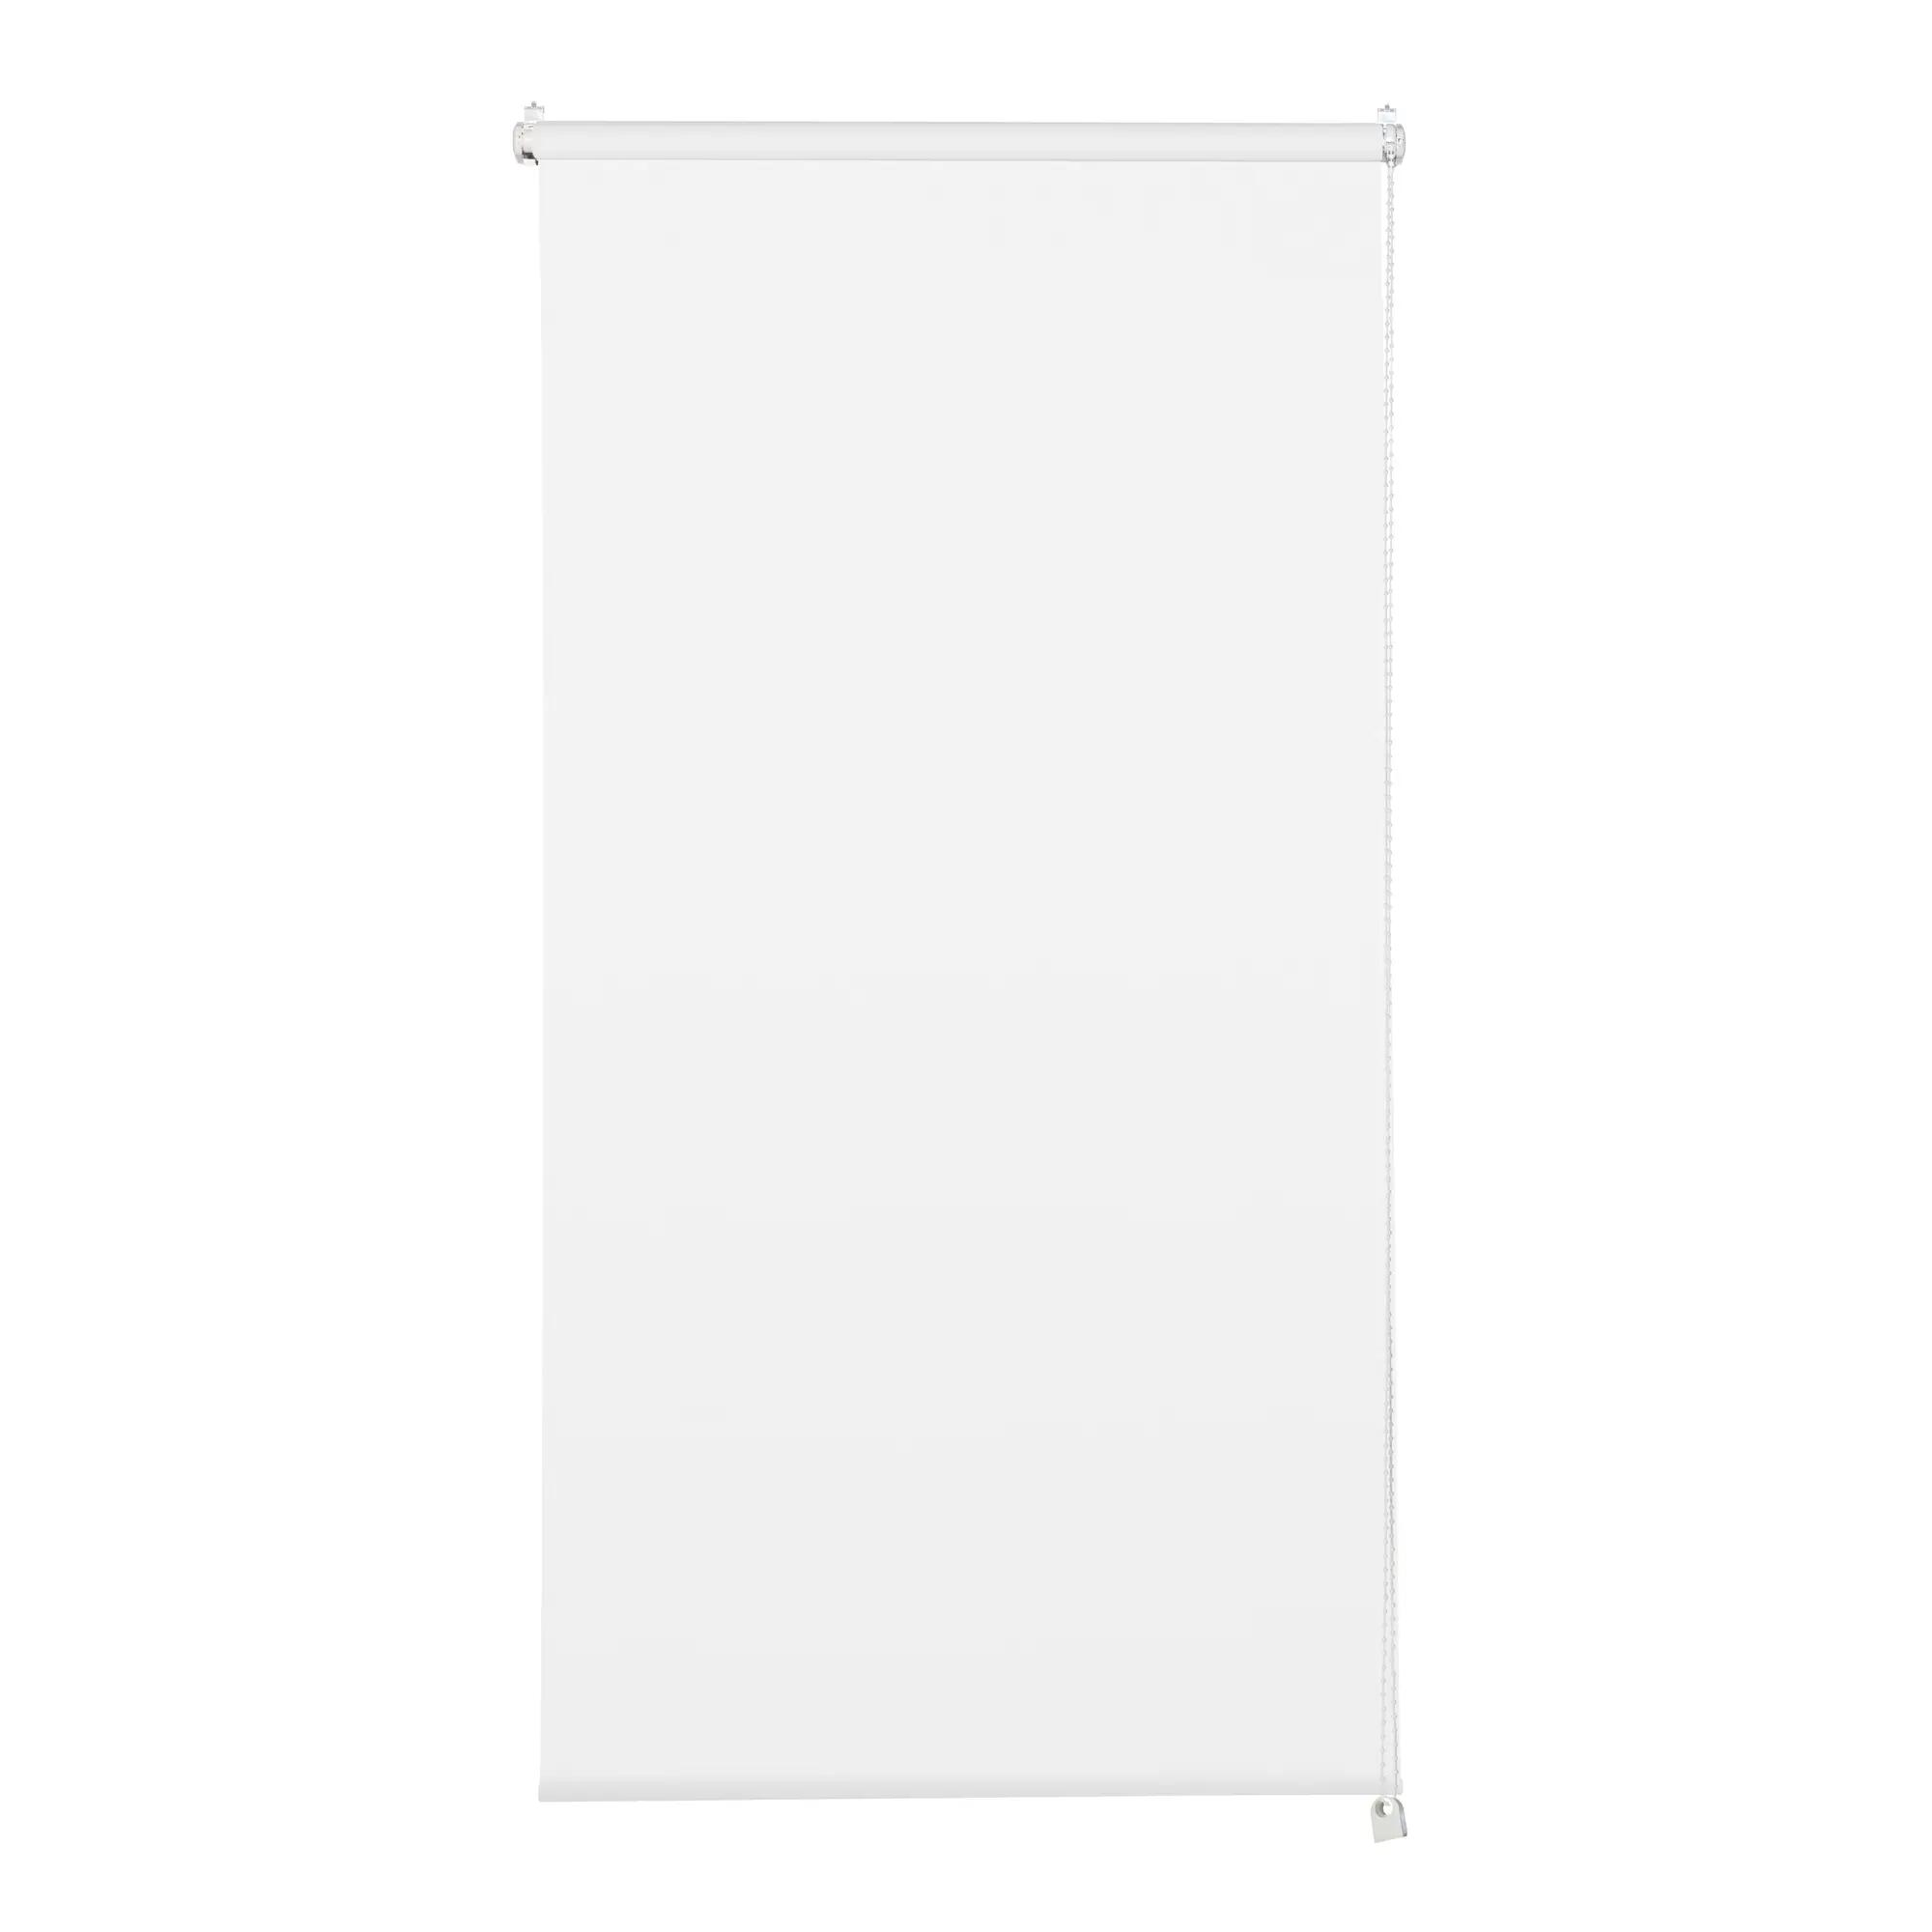 Tenda a rullo filtrante INSPIRE Screen bianca 220 x 250 cm - 3